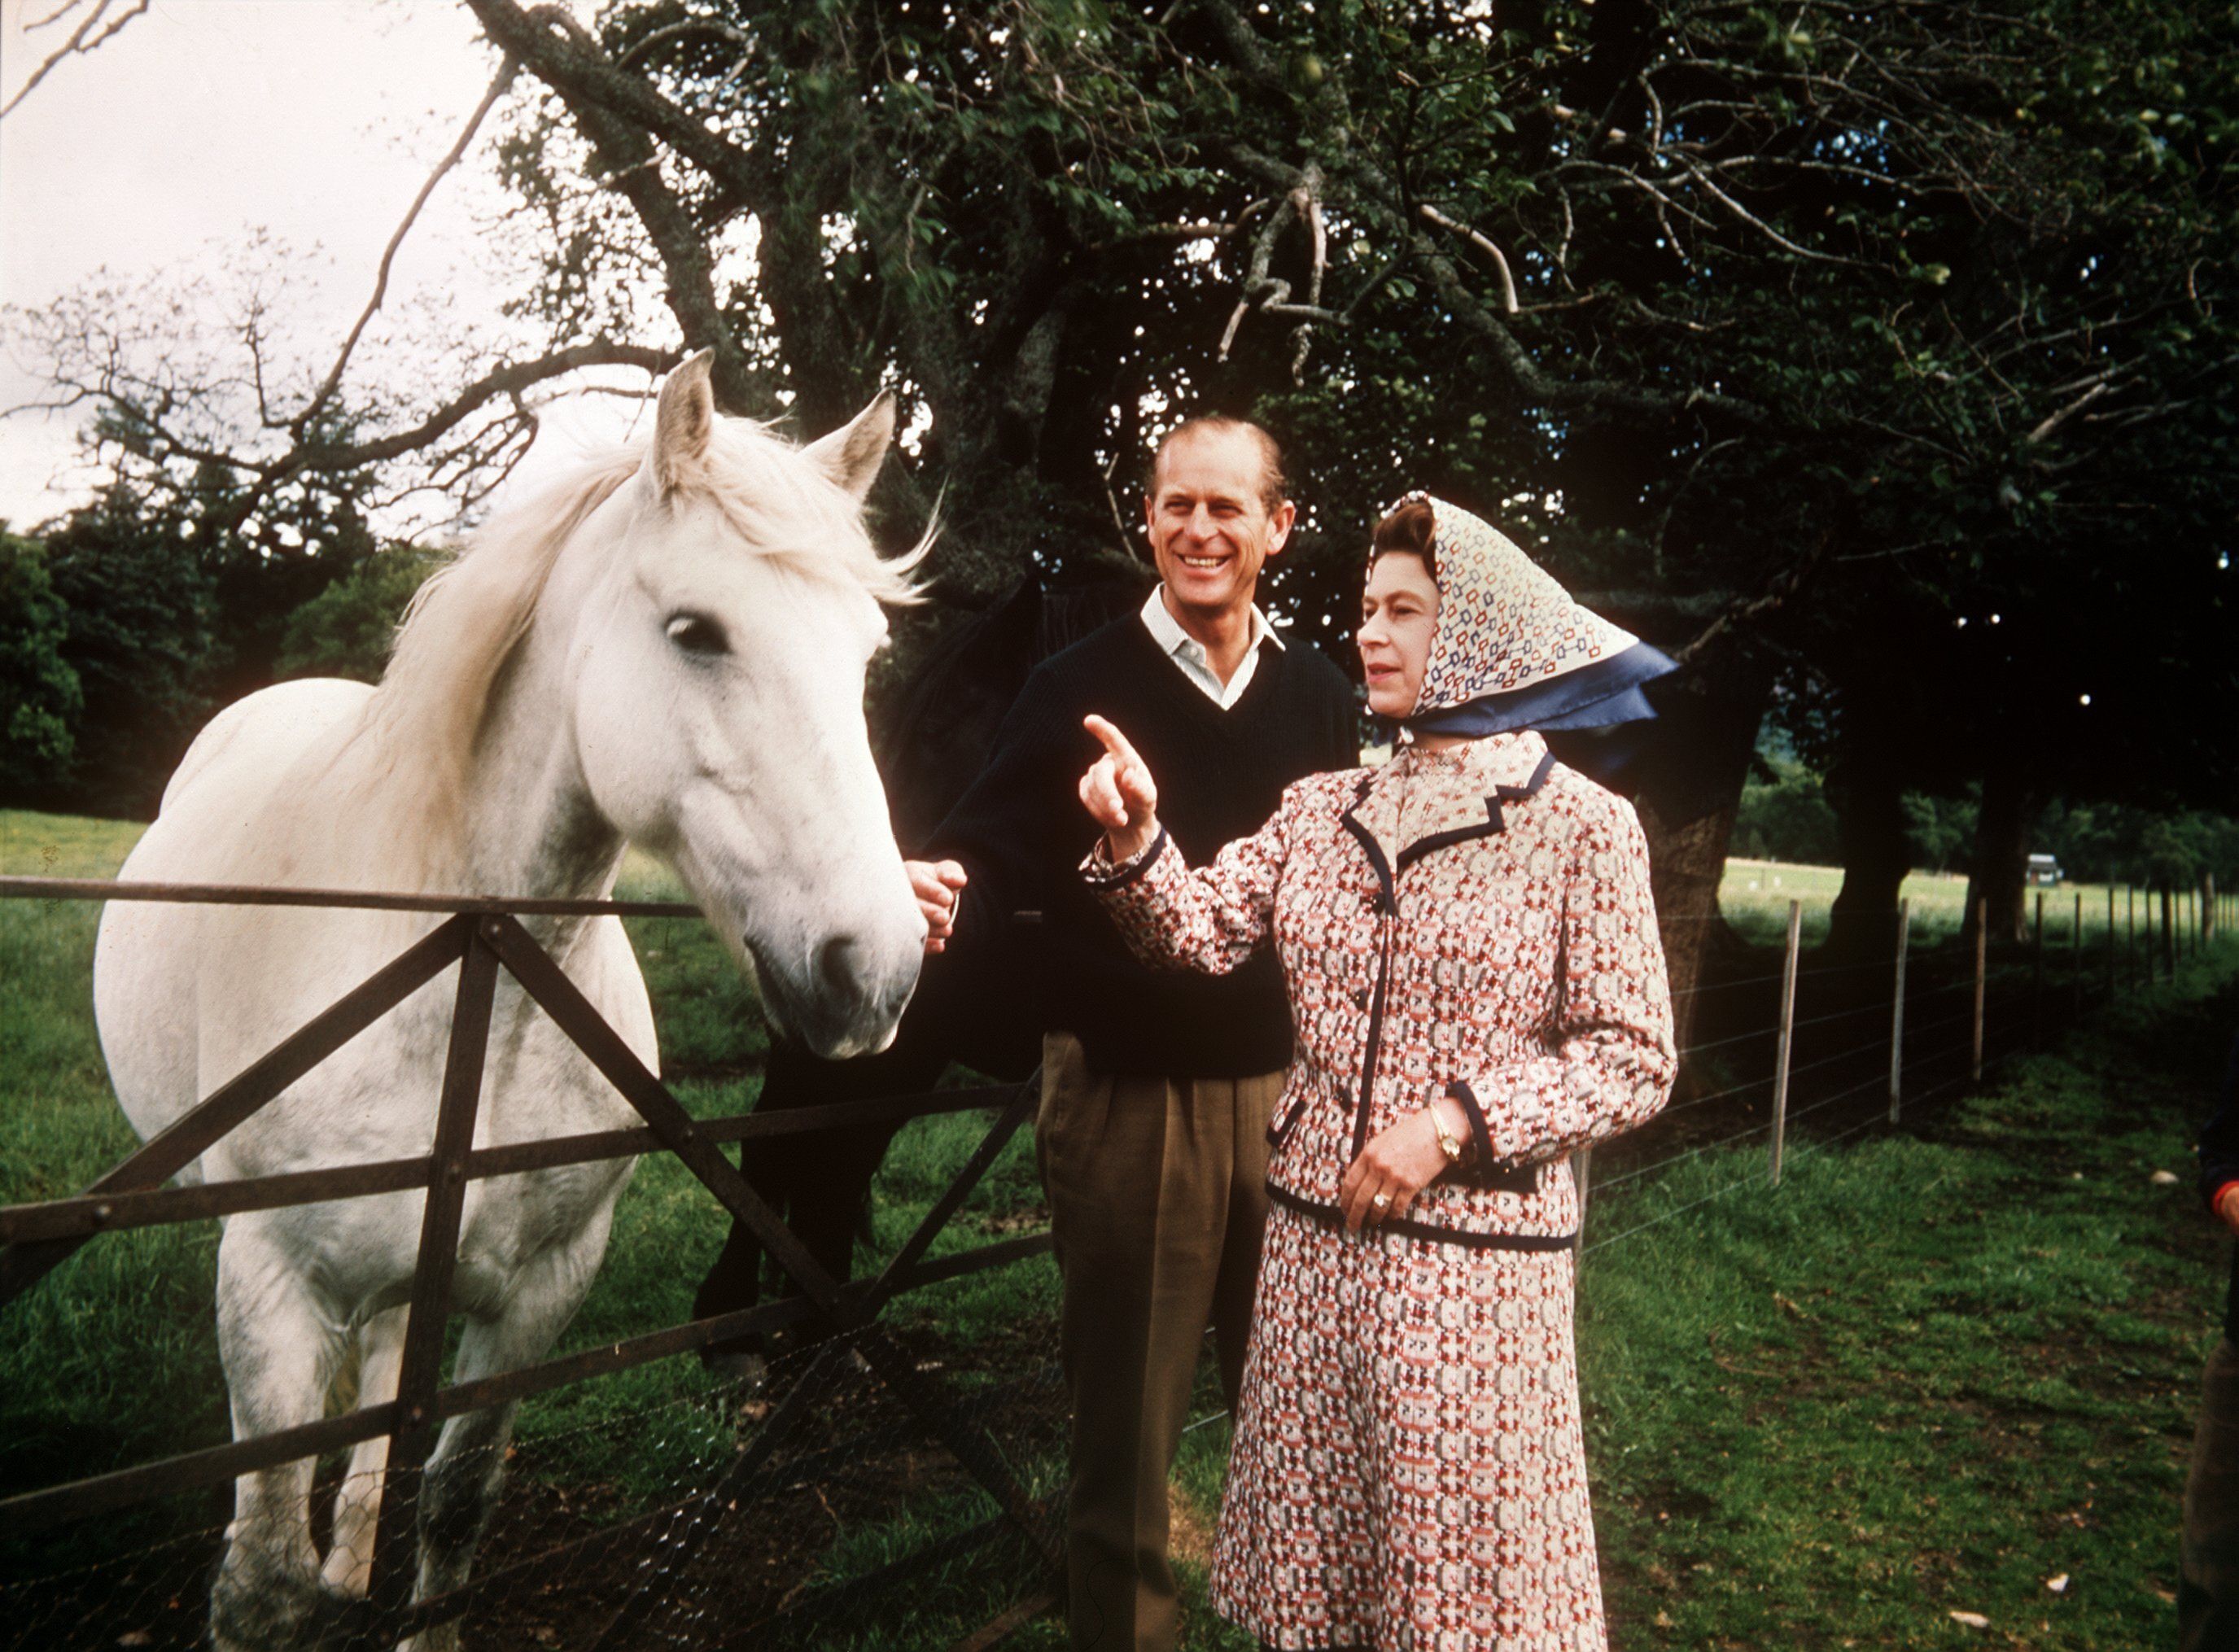 Queen Elizabeth in ihrem Element. In der Nähe von Pferden und Hunden fühlte sie sich am wohlsten.